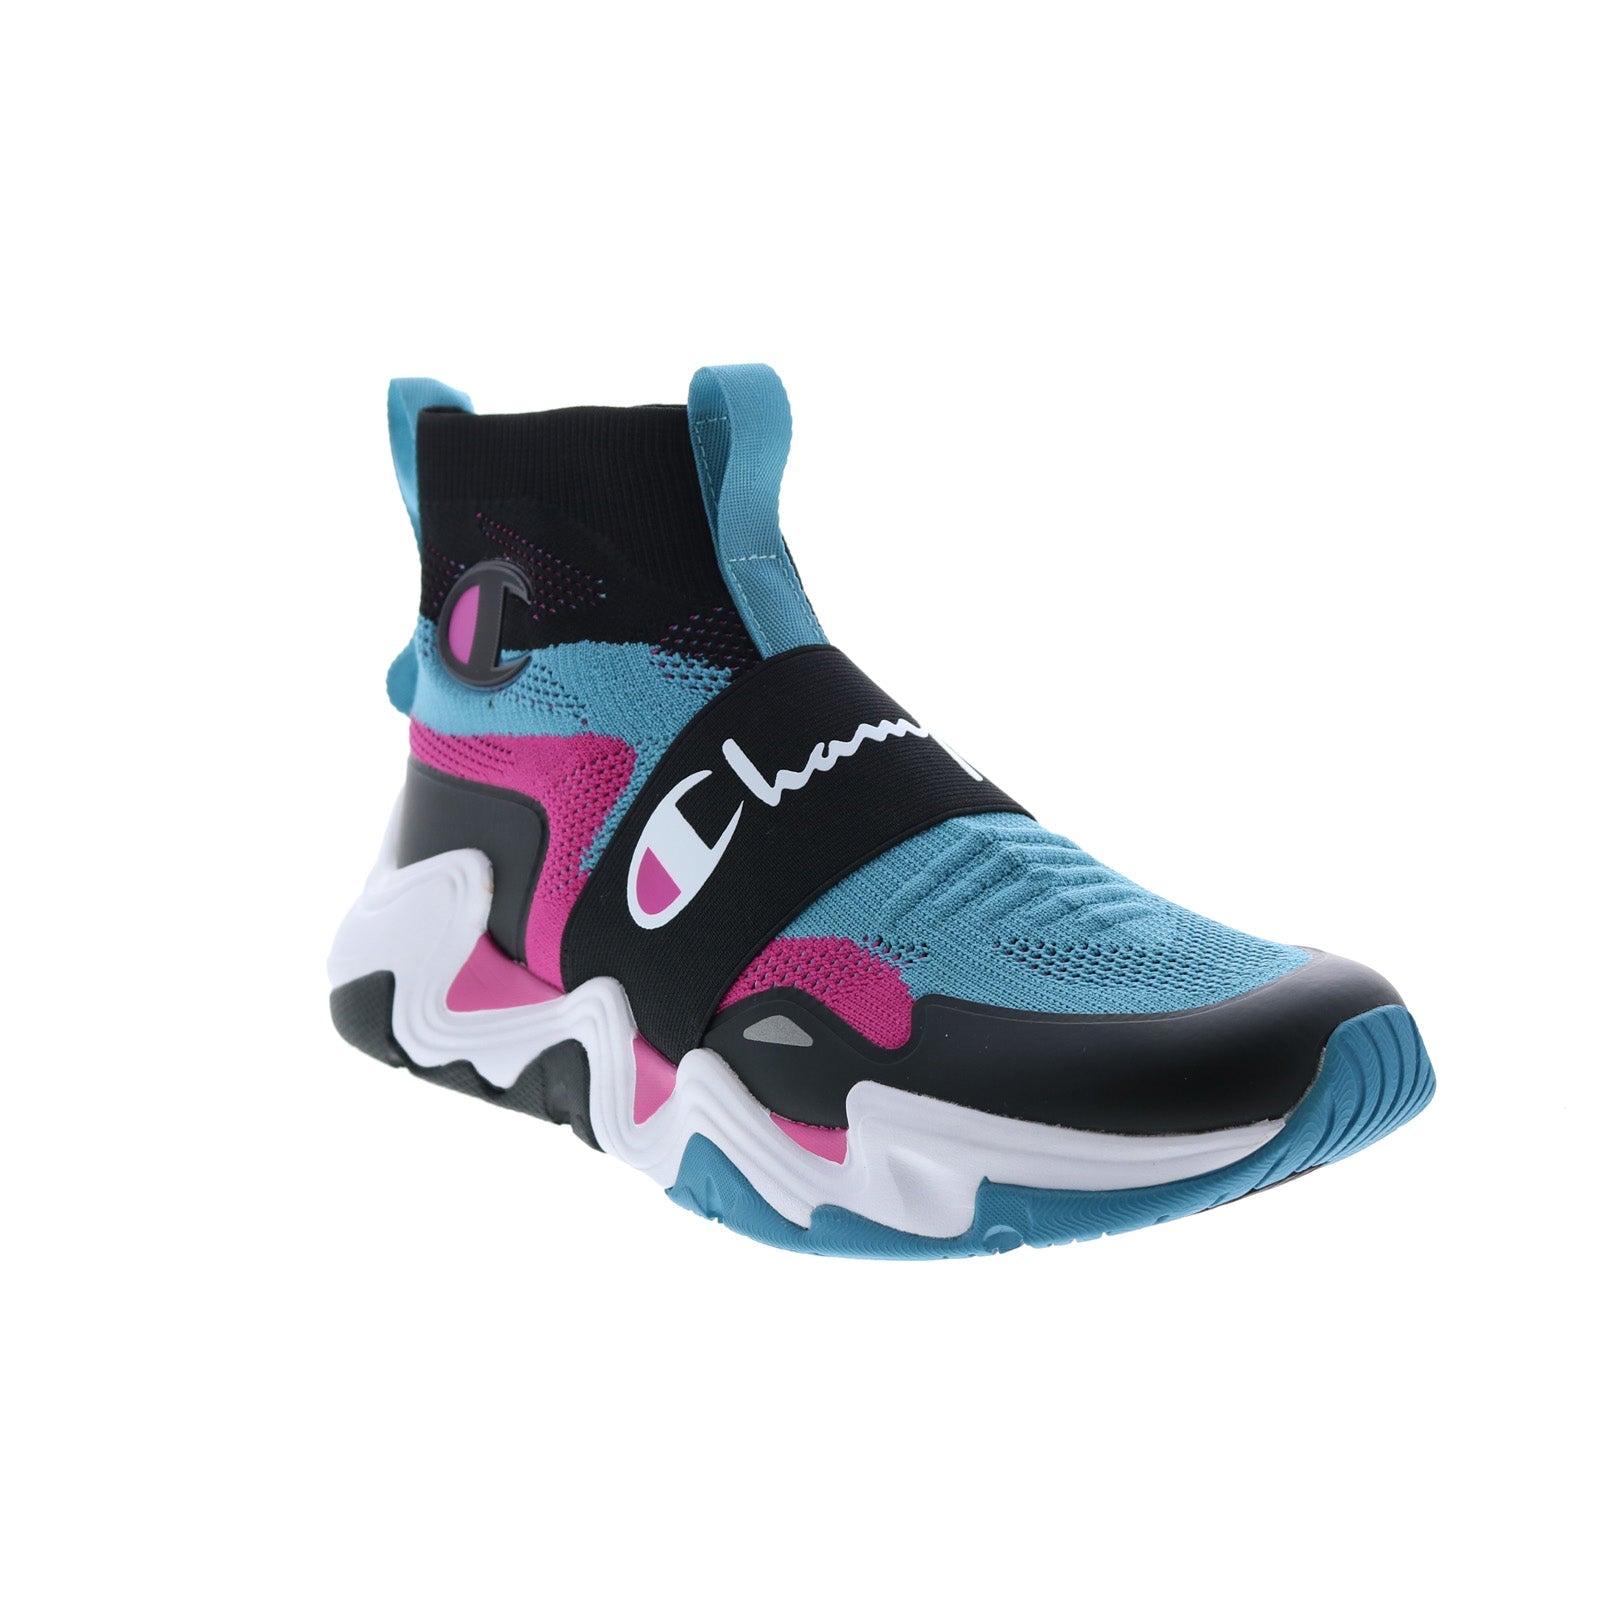 Customizable Pneumatic Pressure Sneakers : Wahu sneakers